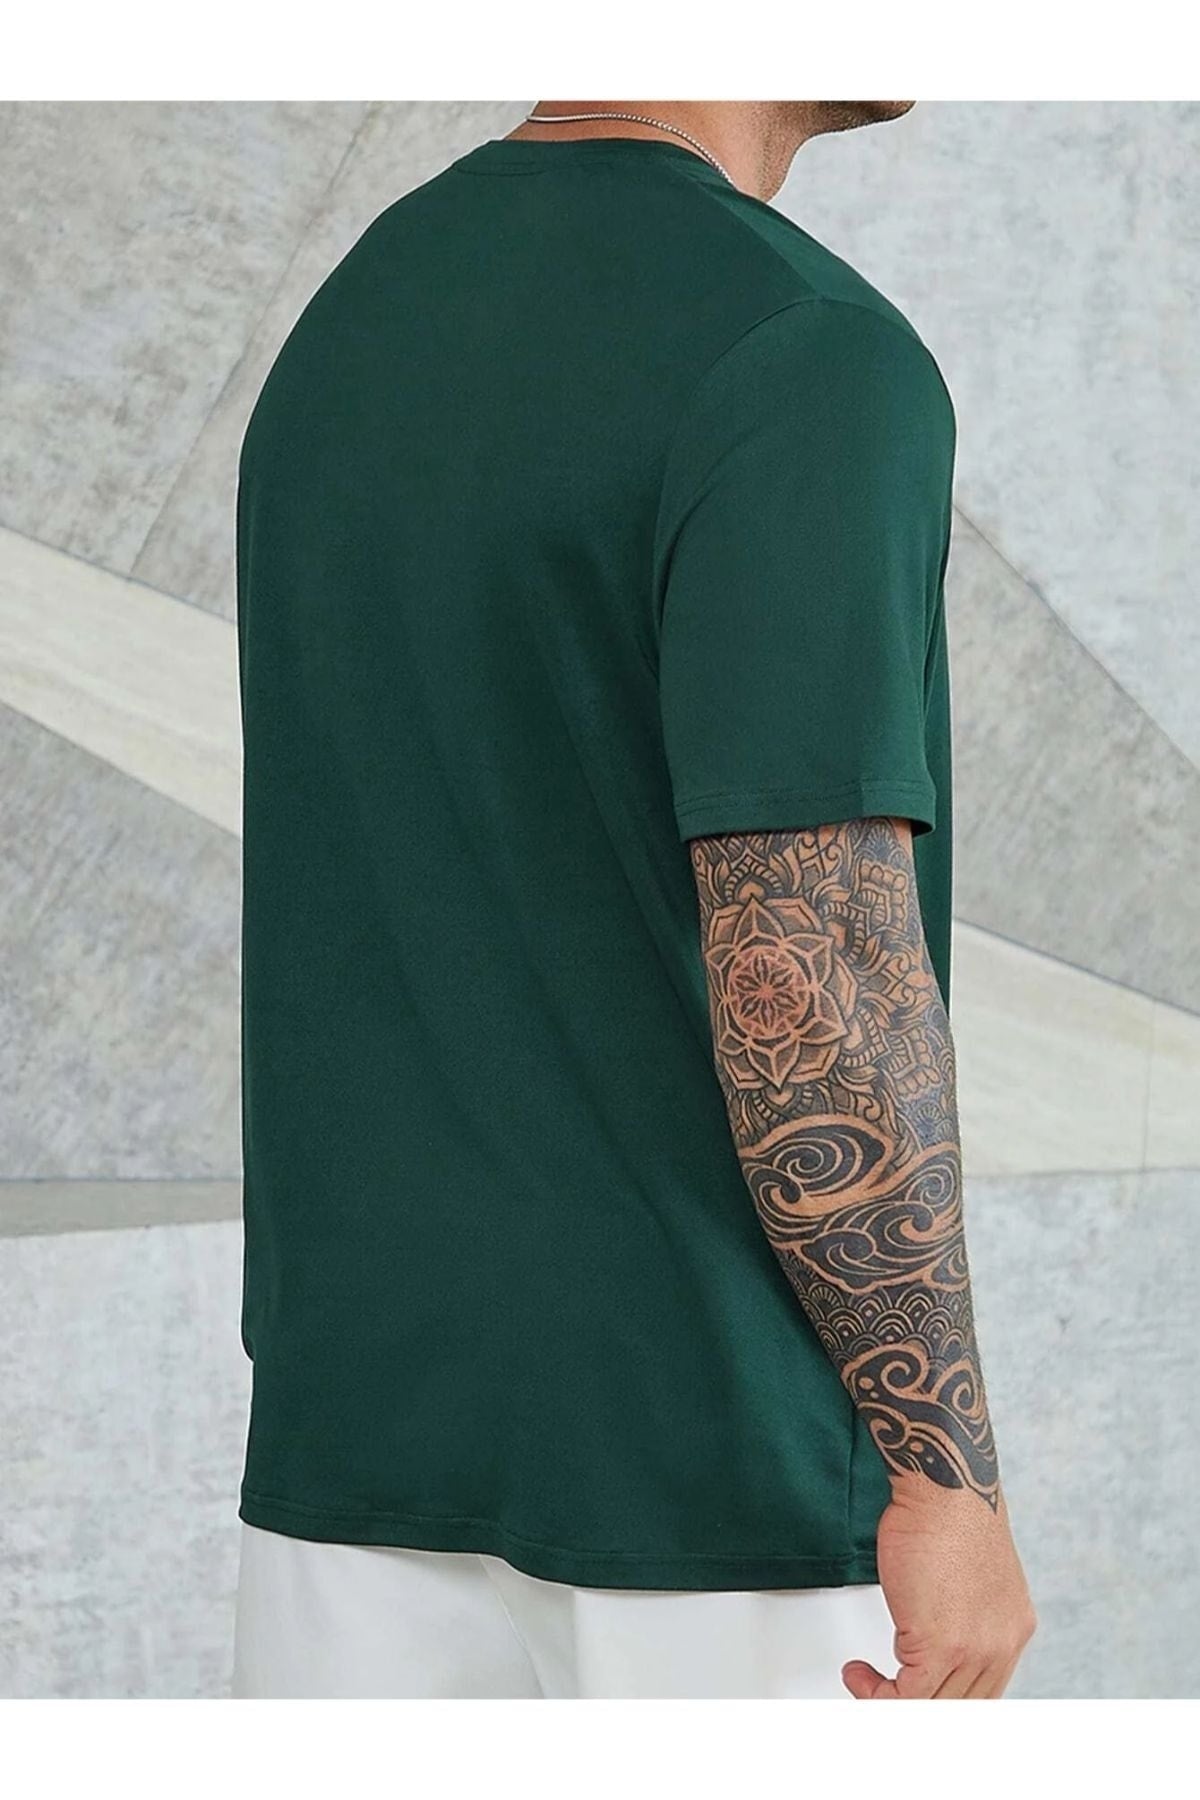 Men's Green Believe Printed Oversize T-shirt